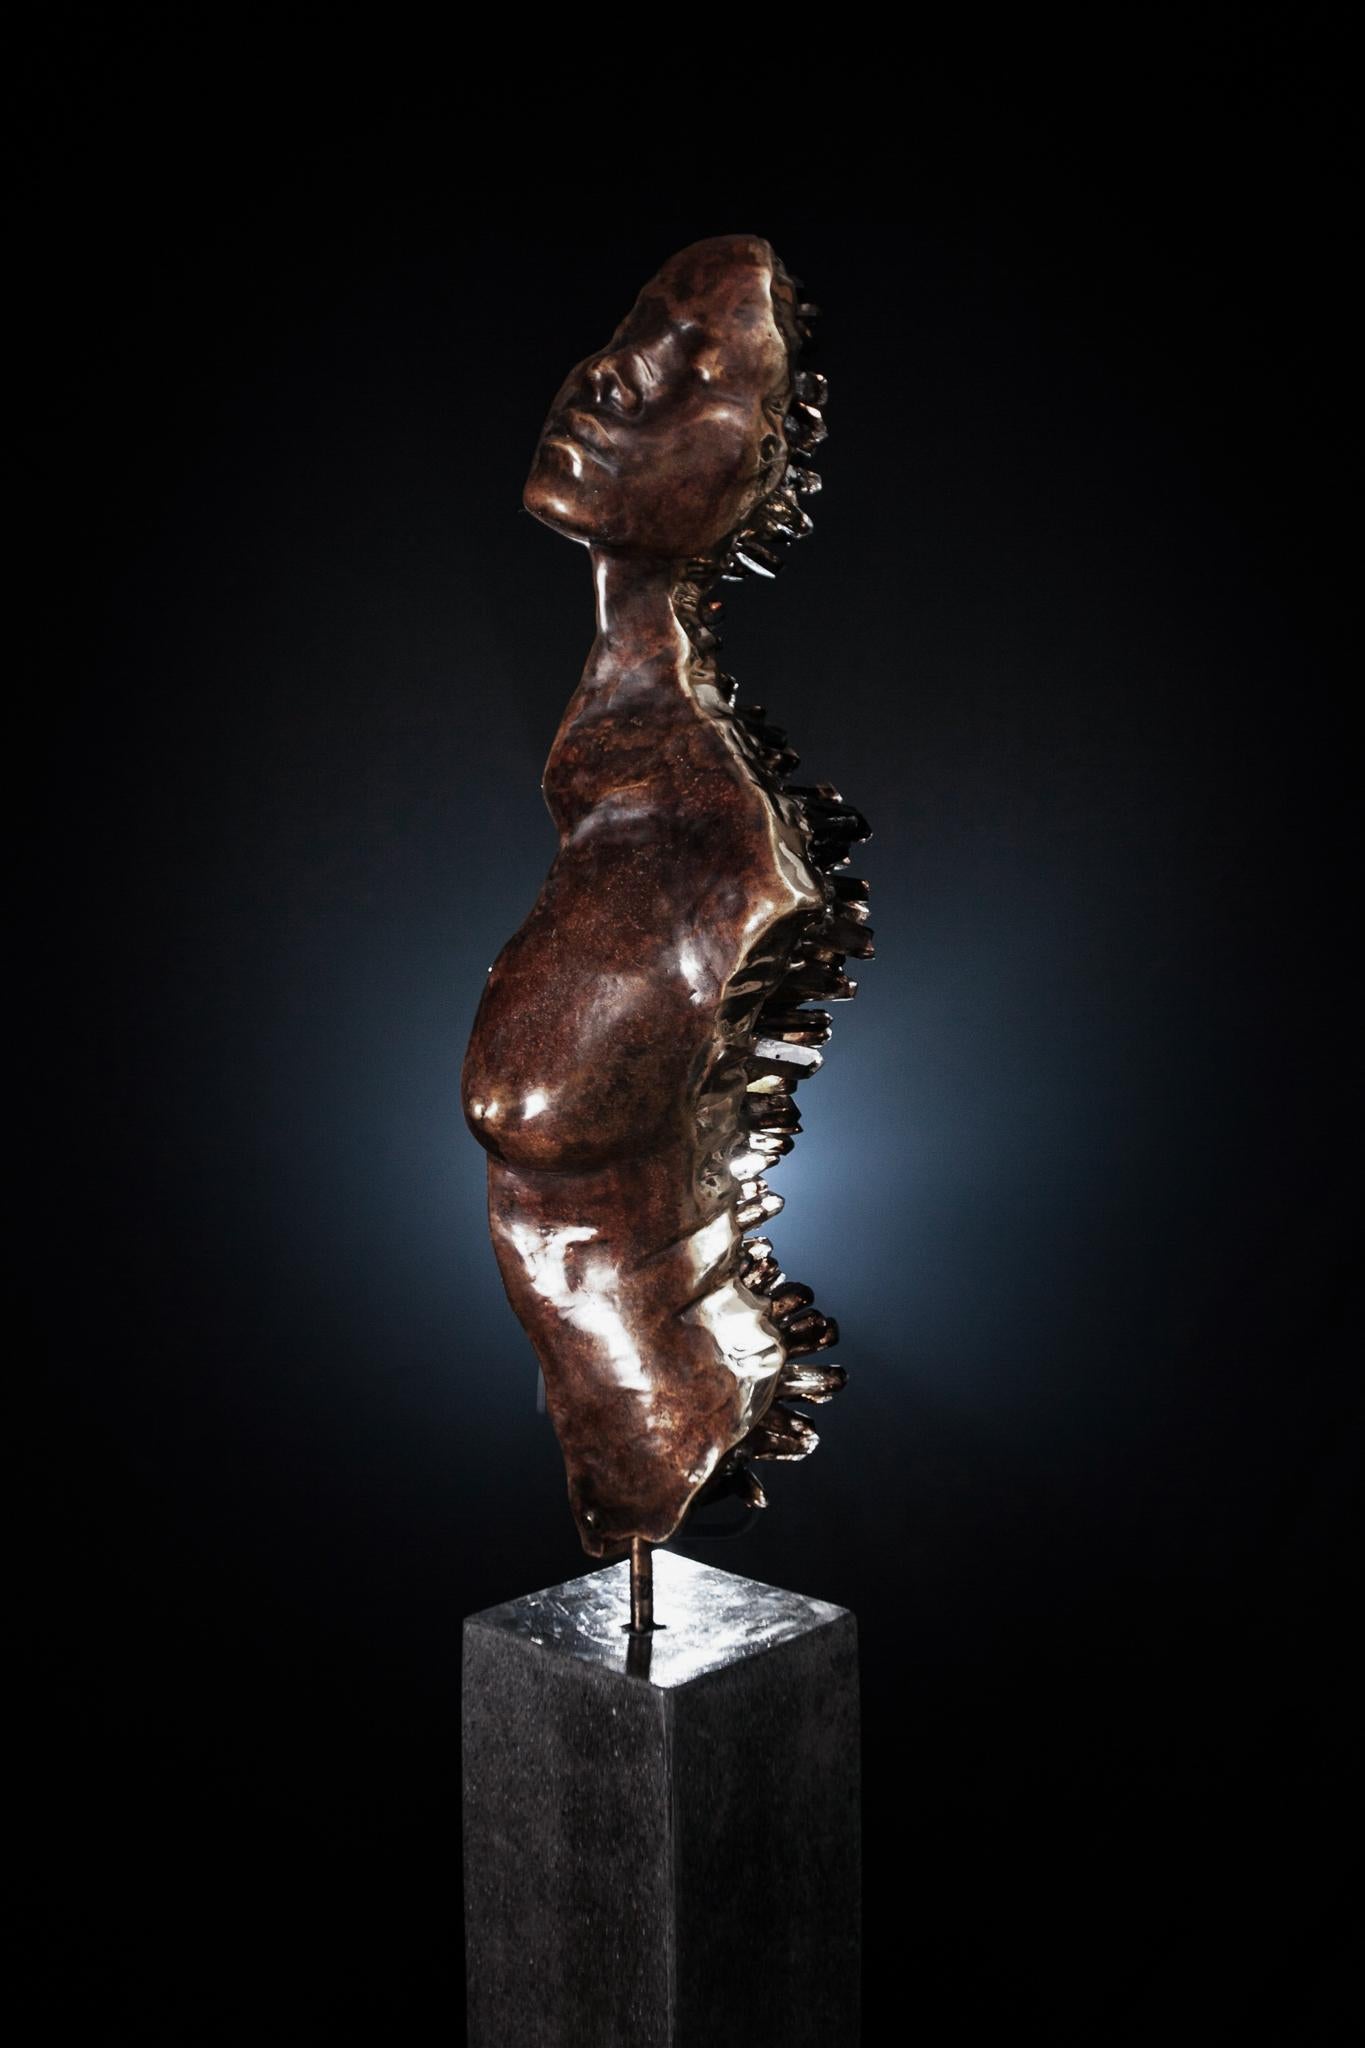 Abstract Sculpture James Lomax - ÉTAT LIMINAL  Sculpture en bronze et cristaux de quartz fumé